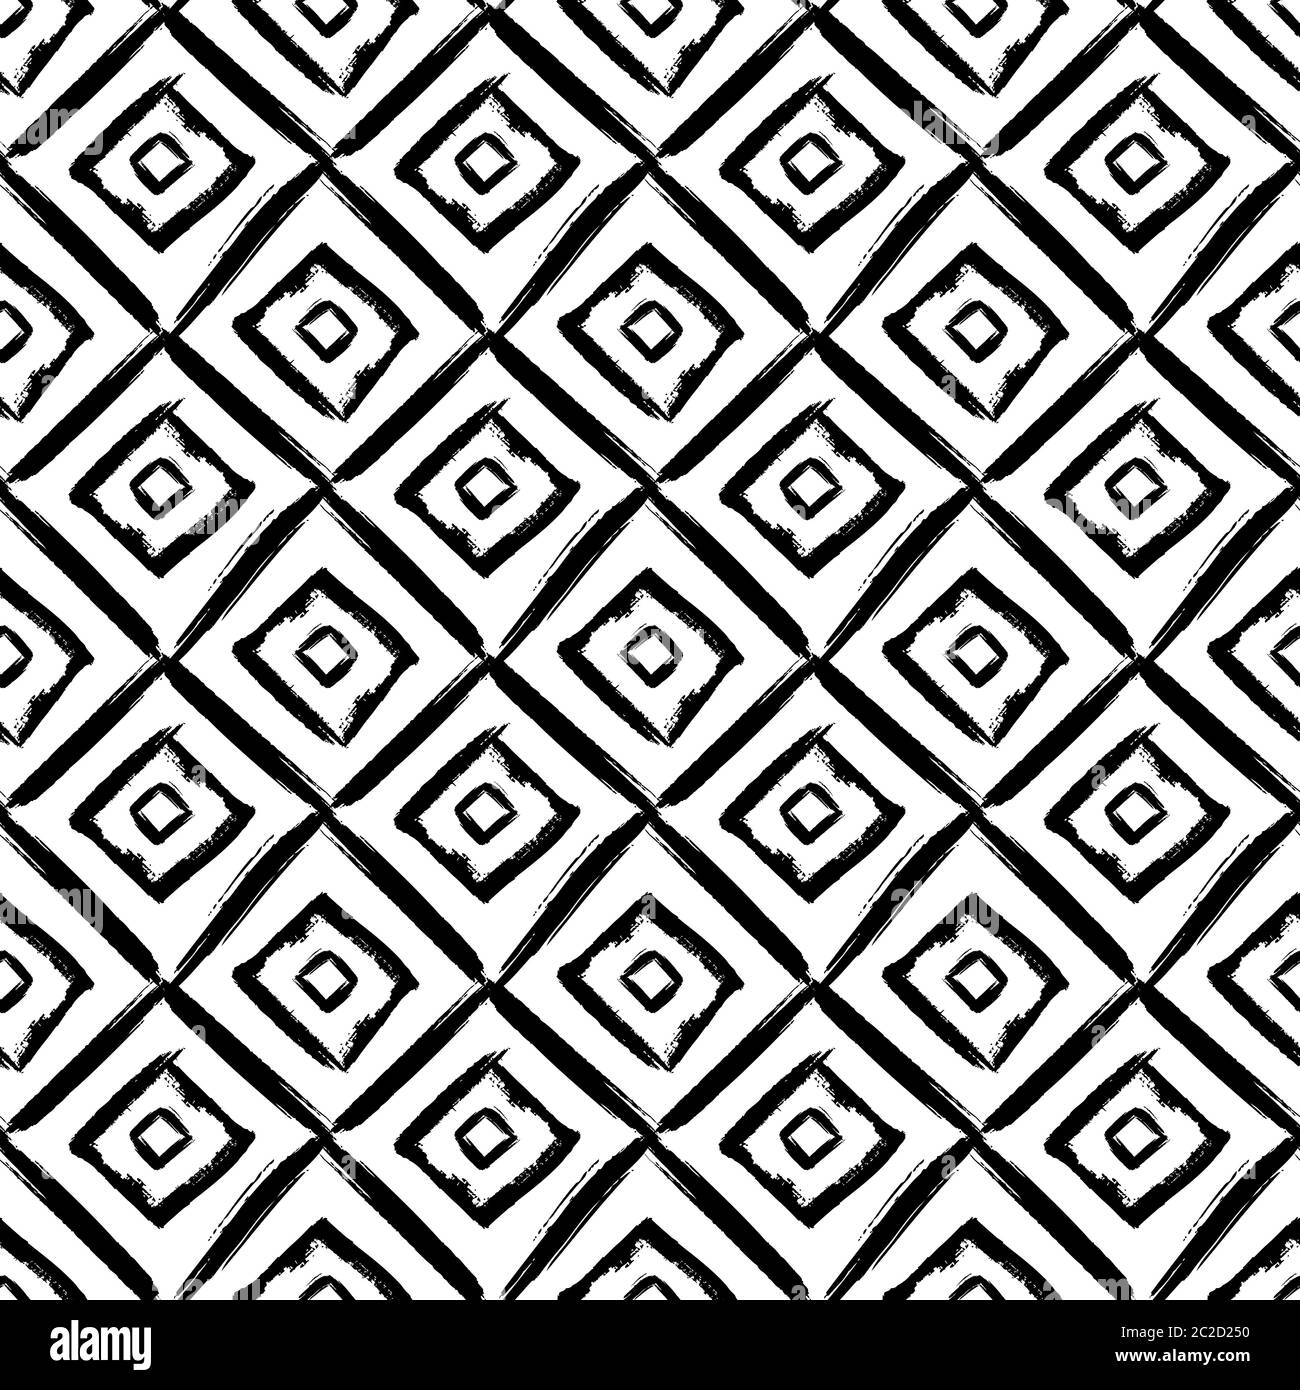 Abstraktes Nahtmuster mit handgezeichneten Rauten. Schwarz-weiß grunge Hintergrund. Vektorstruktur. Stock Vektor